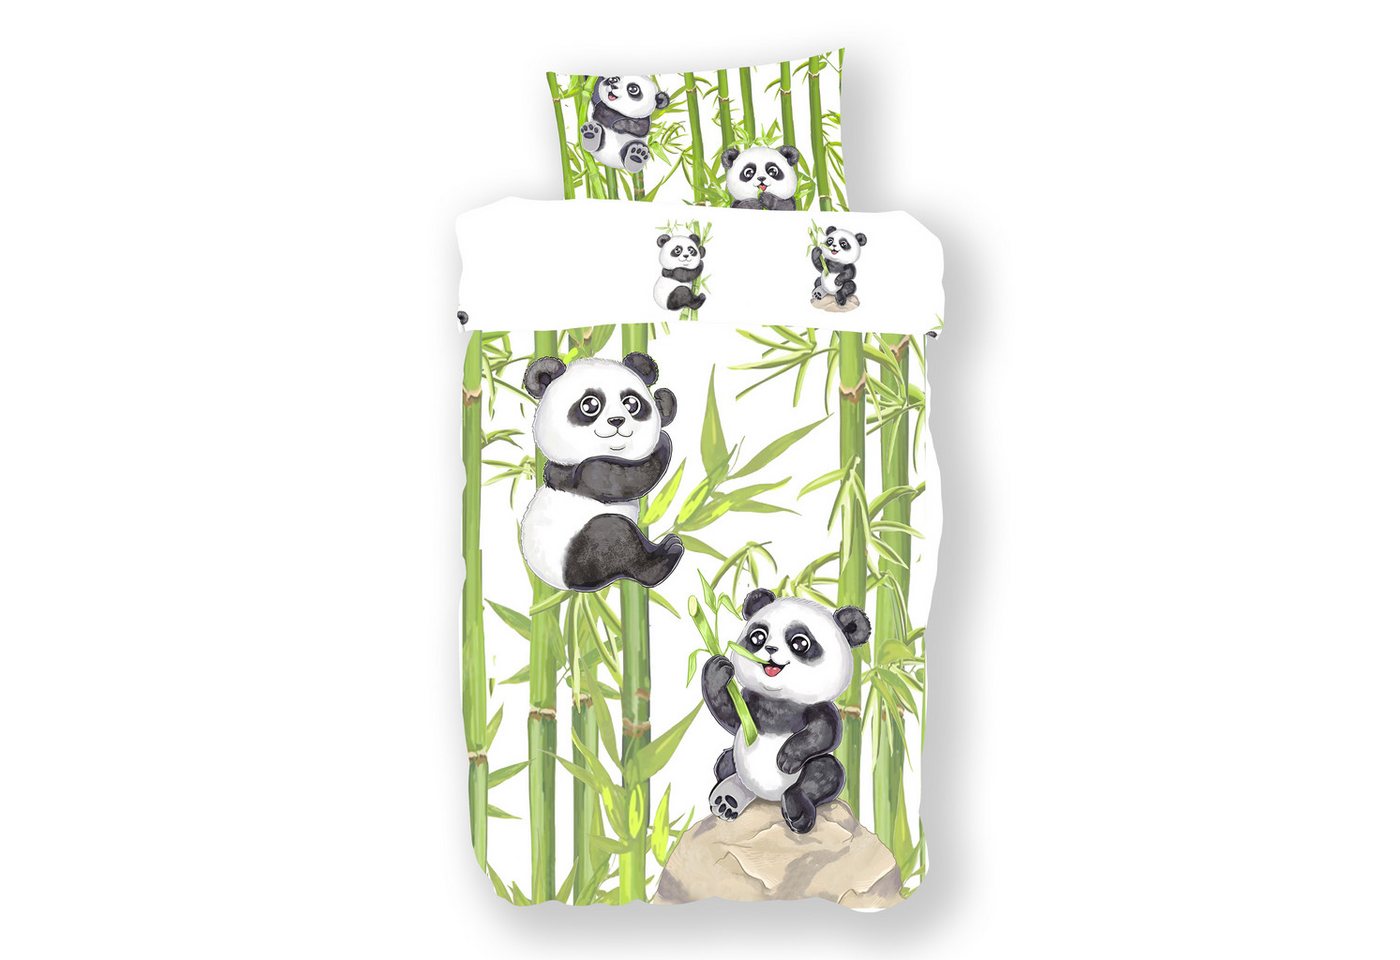 Kinderbettwäsche Panda als Babybettwäsche 100x135 oder Kinderbettwäsche 135x200, Koru Kids, 100% Baumwolle (Renforc), 2 teilig, Kuschelig weiche Kinderbettwäsche mit wirklich tollem Panda Motiv von Koru Kids